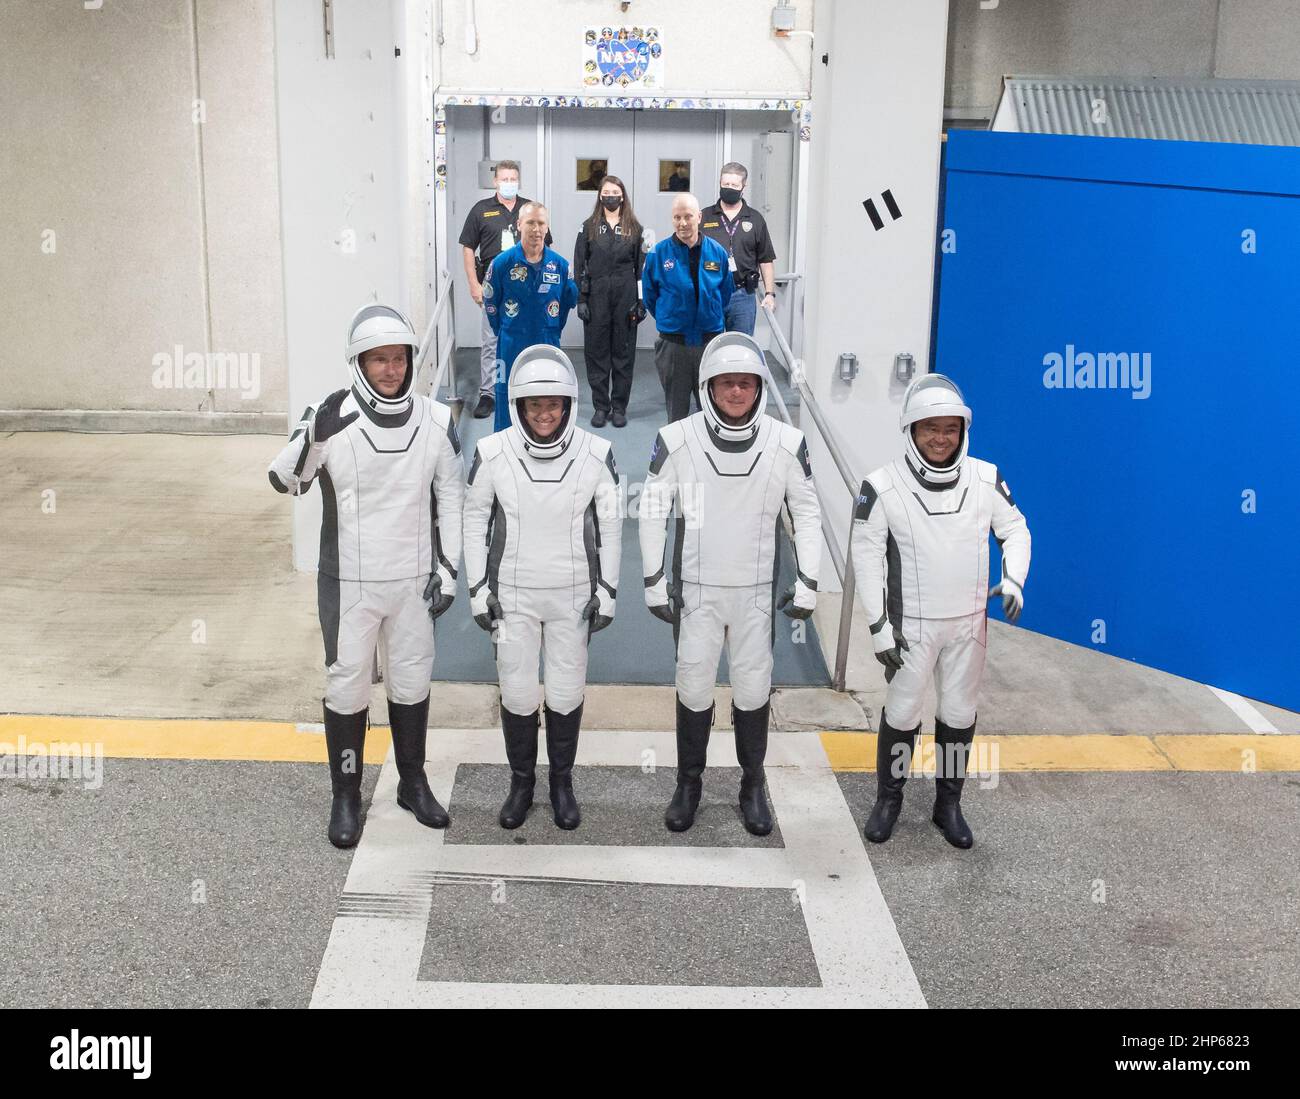 De gauche à droite, Thomas Pesquet, astronaute de l'ESA (Agence spatiale européenne), Megan McArthur et Shane Kimbrough, astronaute de la NASA Akihiko Hoshide, portant l'espace SpaceX, Sont vus comme ils se préparent à quitter le bâtiment Neil A. Armstrong Operations and Checkout Building pour le complexe de lancement 39A lors d'une répétition de robe avant le lancement de la mission Crew-2, le dimanche 18 avril 2021, au Kennedy Space Center de la NASA, en Floride. Banque D'Images